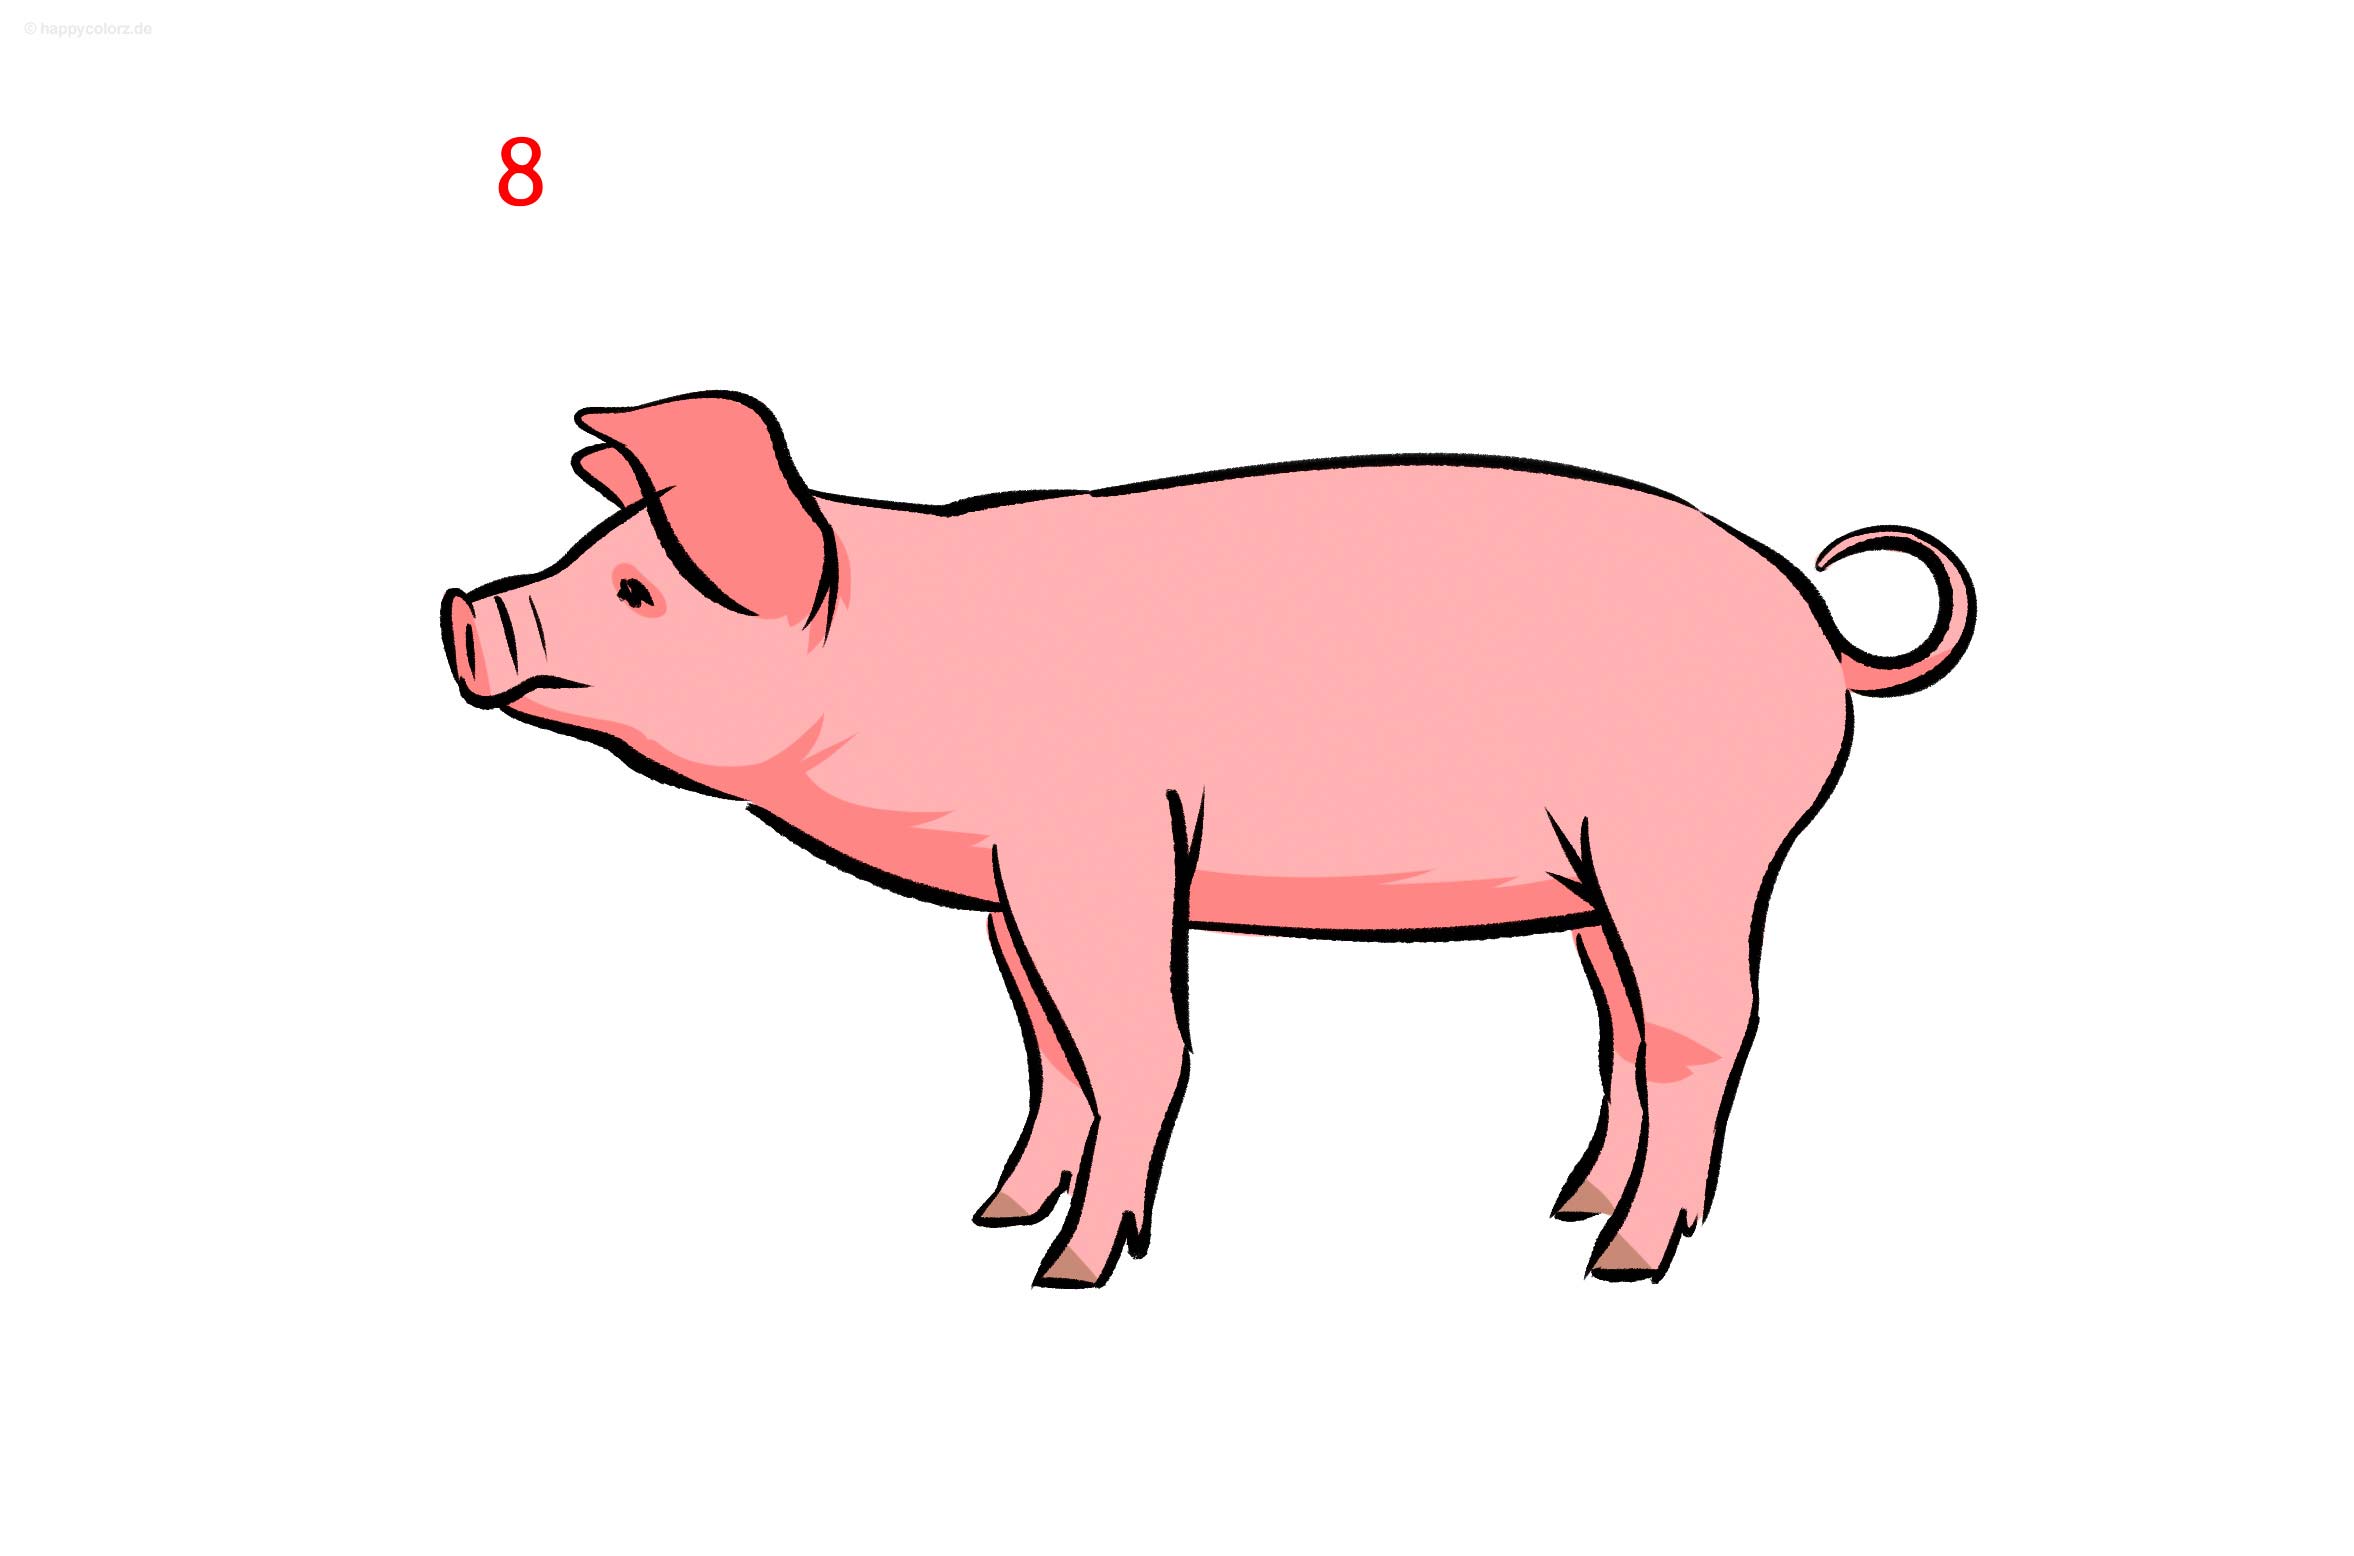 Schwein zeichnen - Schritt für Schritt